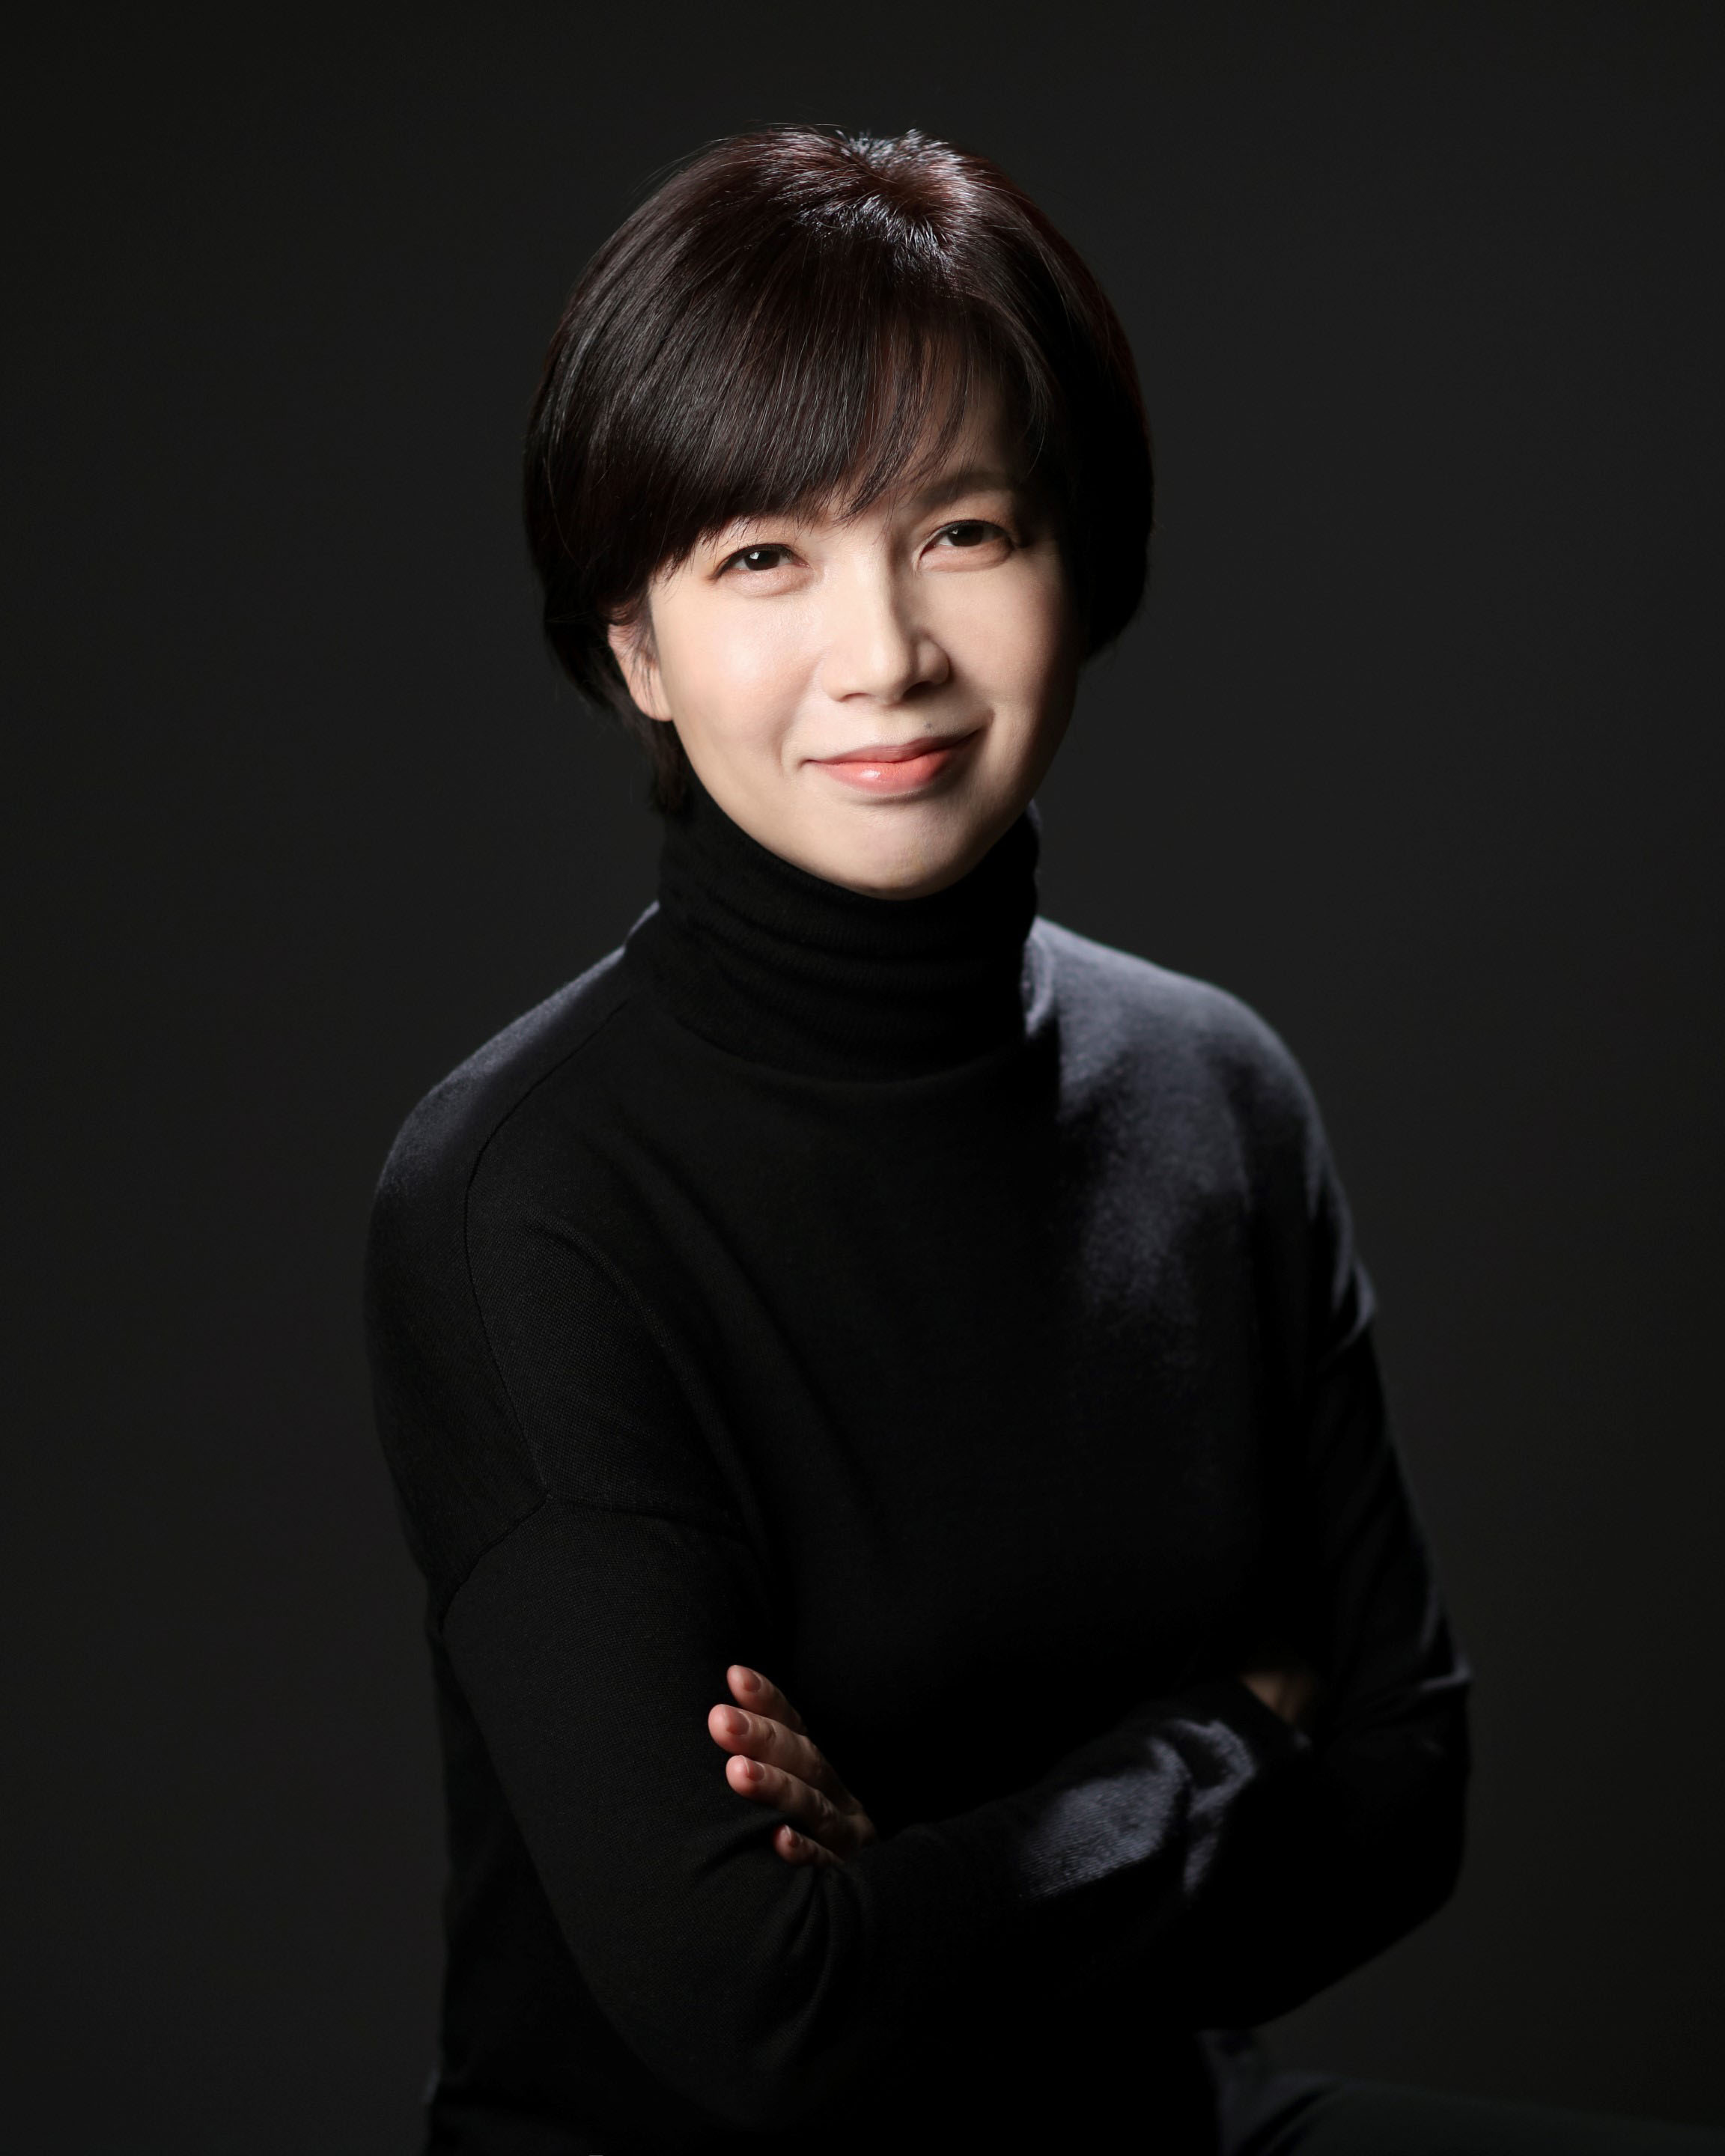 Conductor Sunah Kim